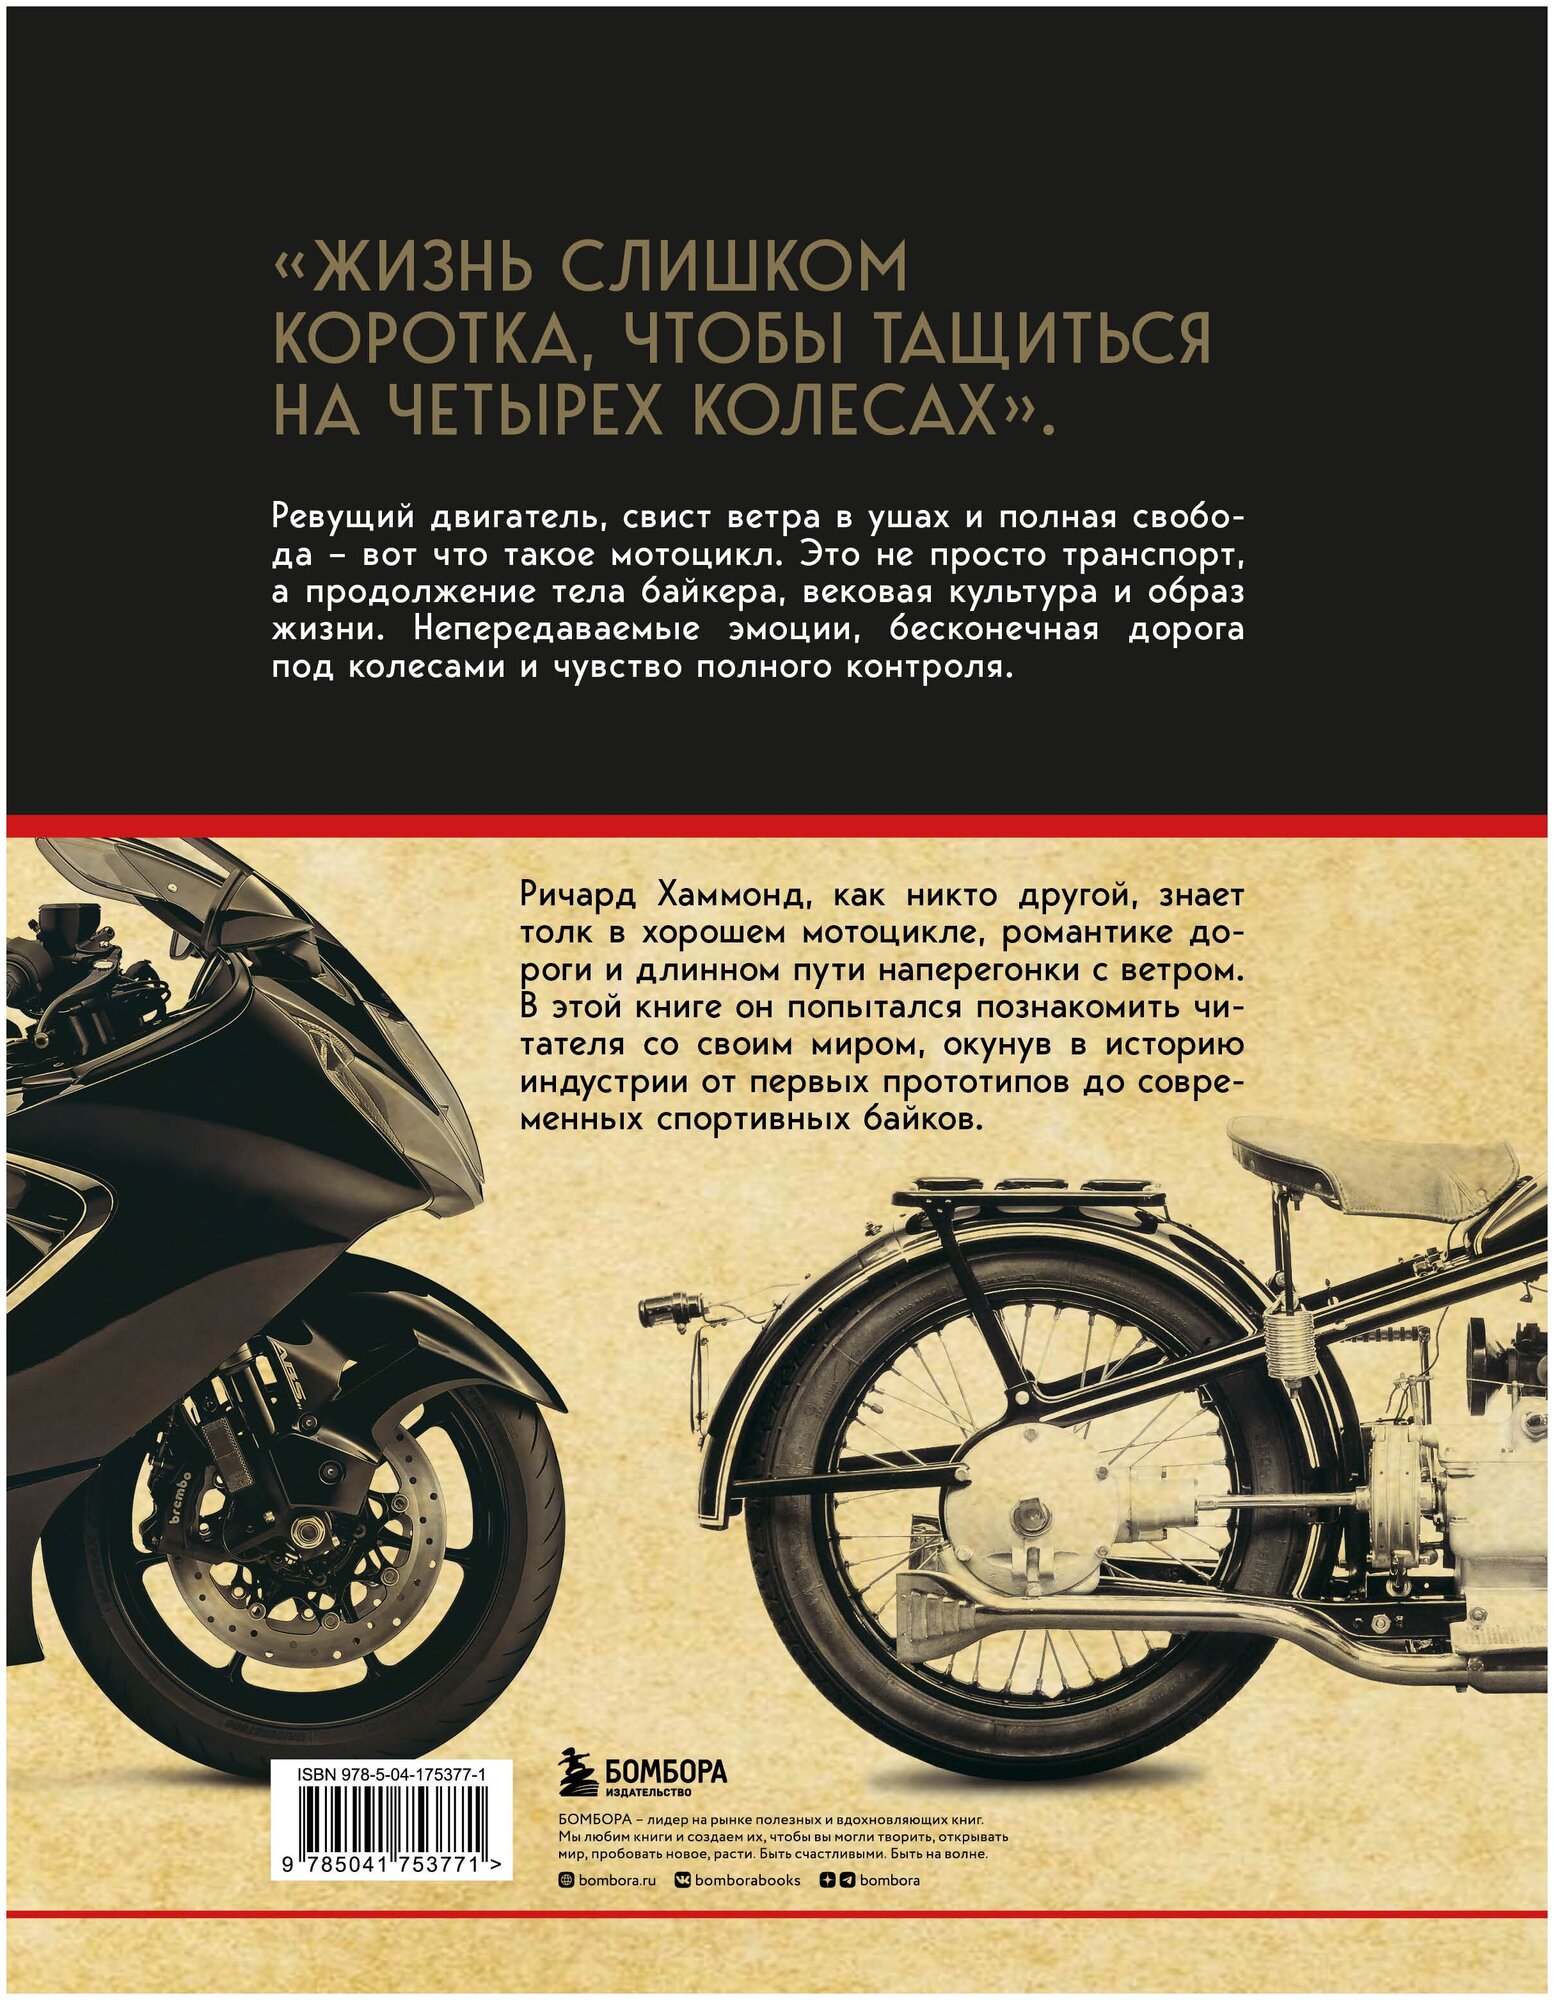 История мотоцикла. От первой модели до спортивных байков(2-е издание) - фото №5